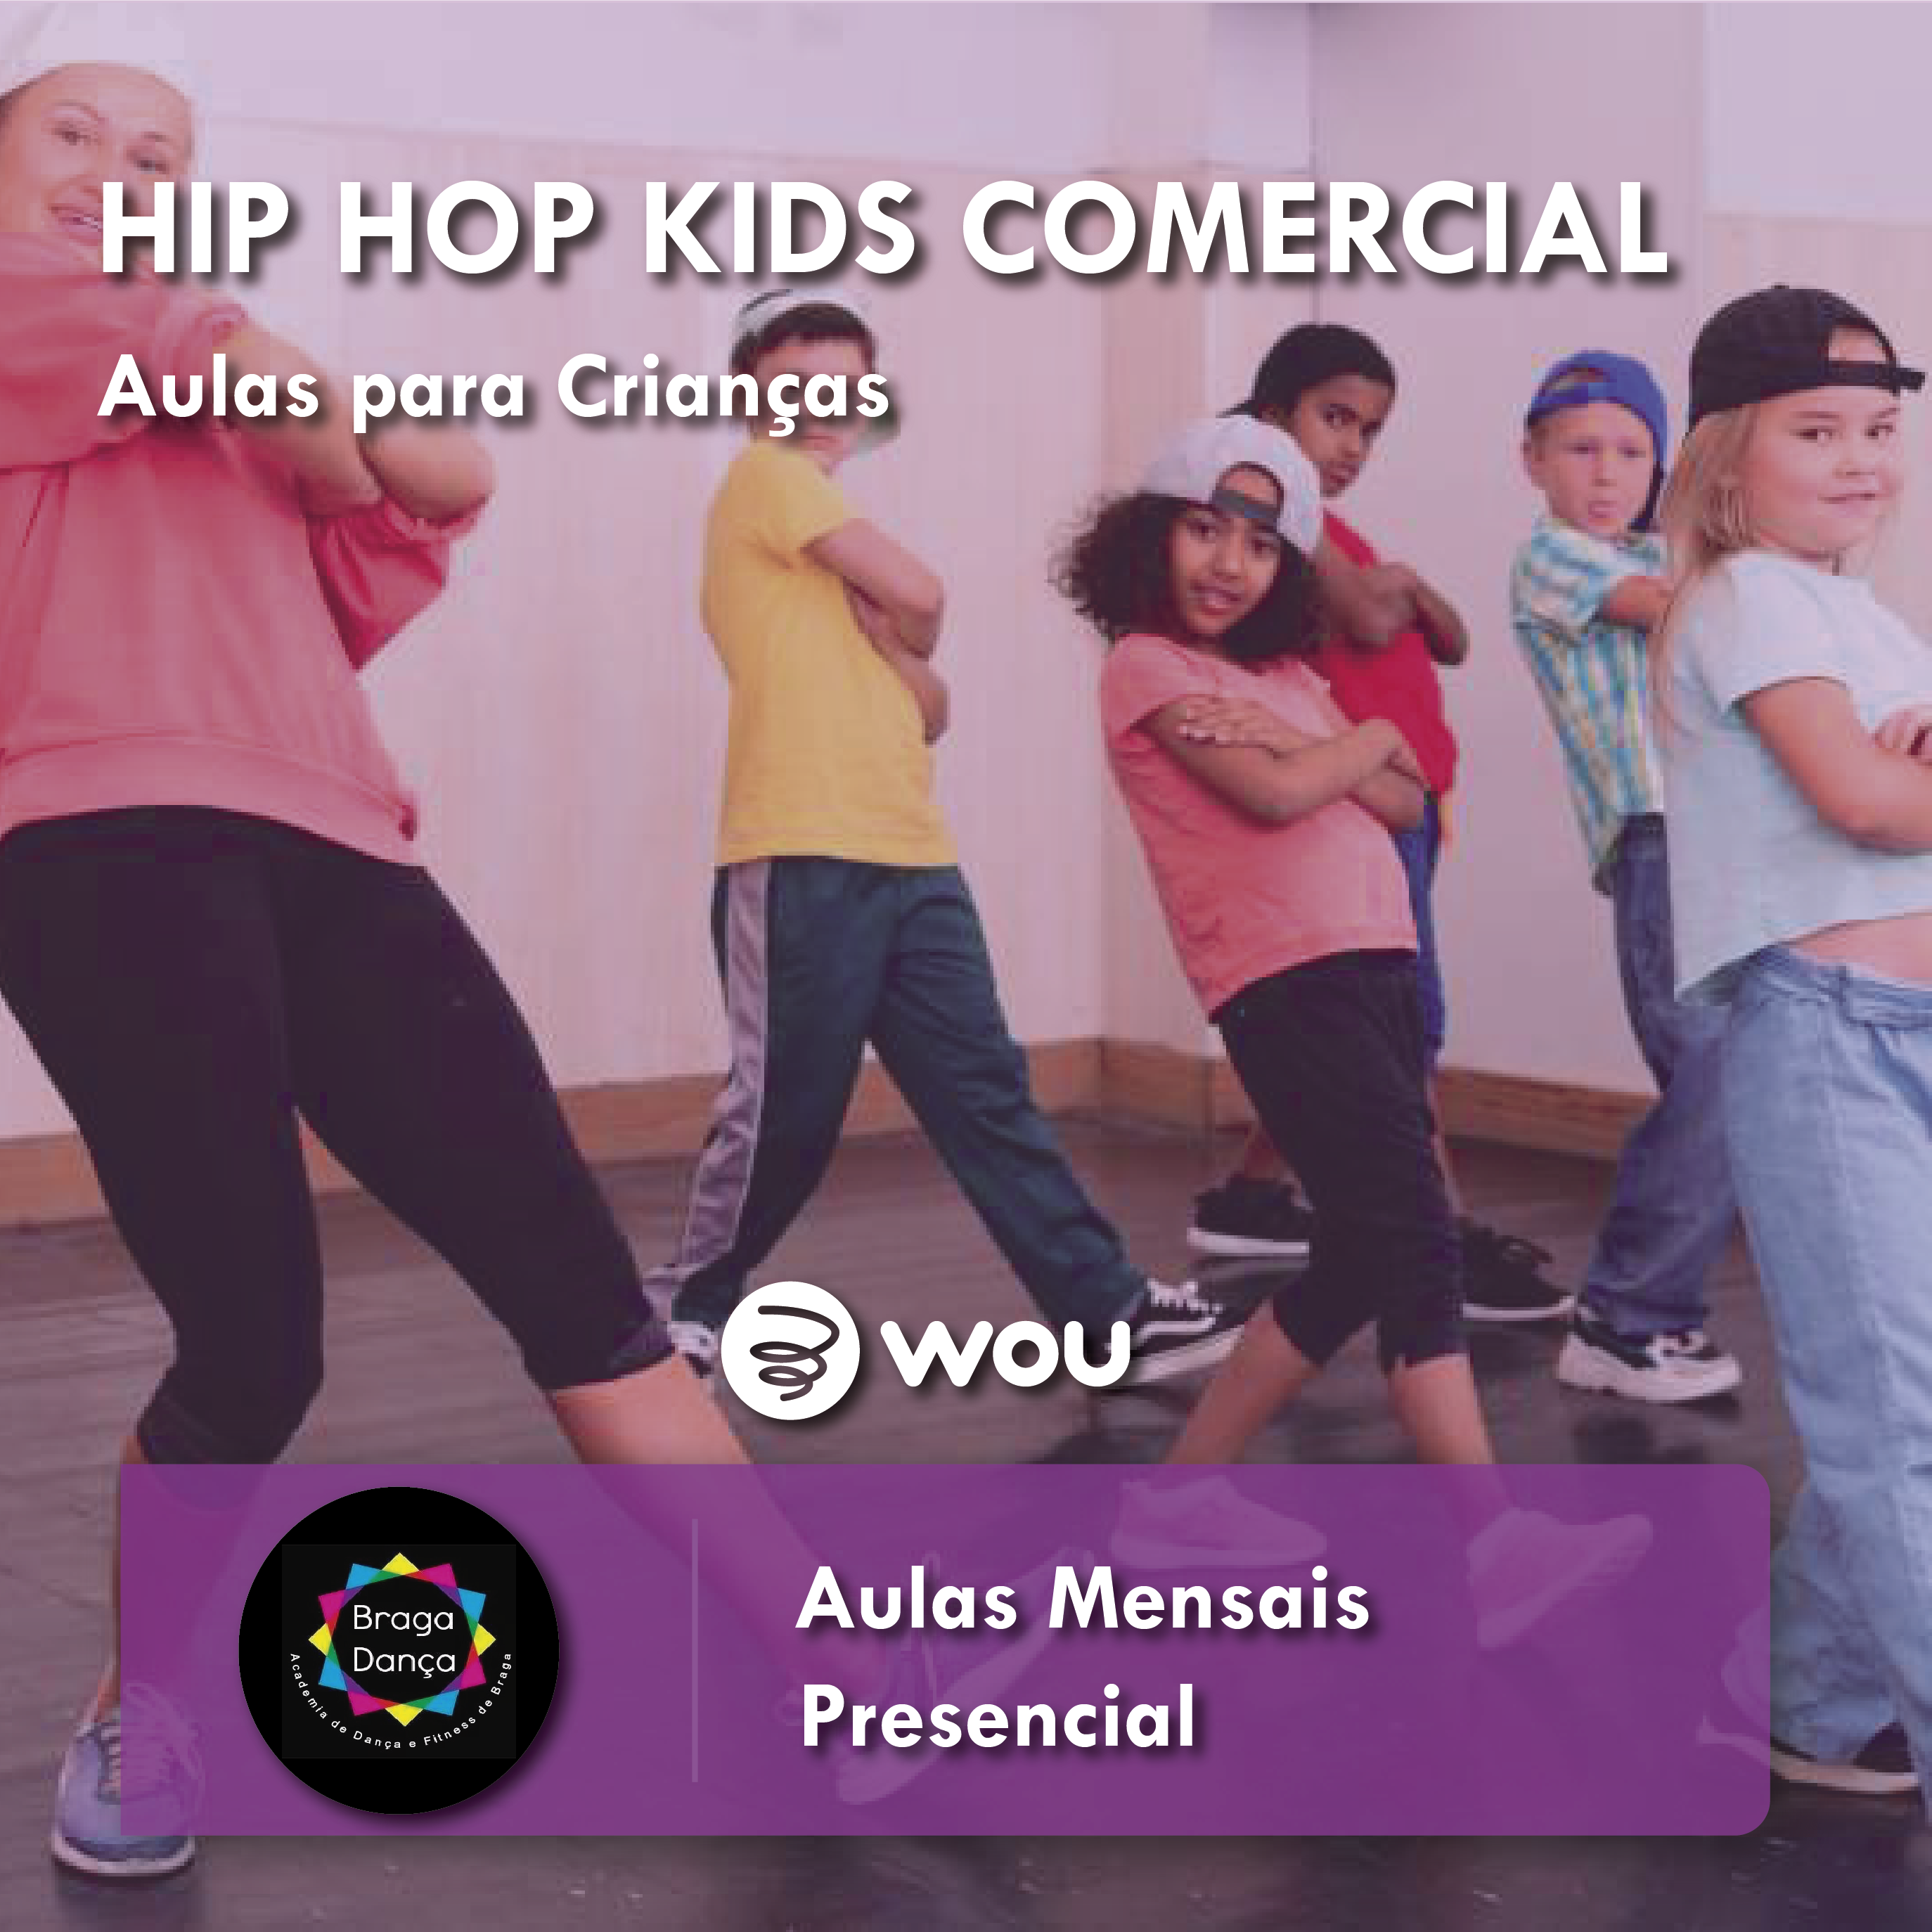 Aulas de Hip Hop Kids Comercial em Braga